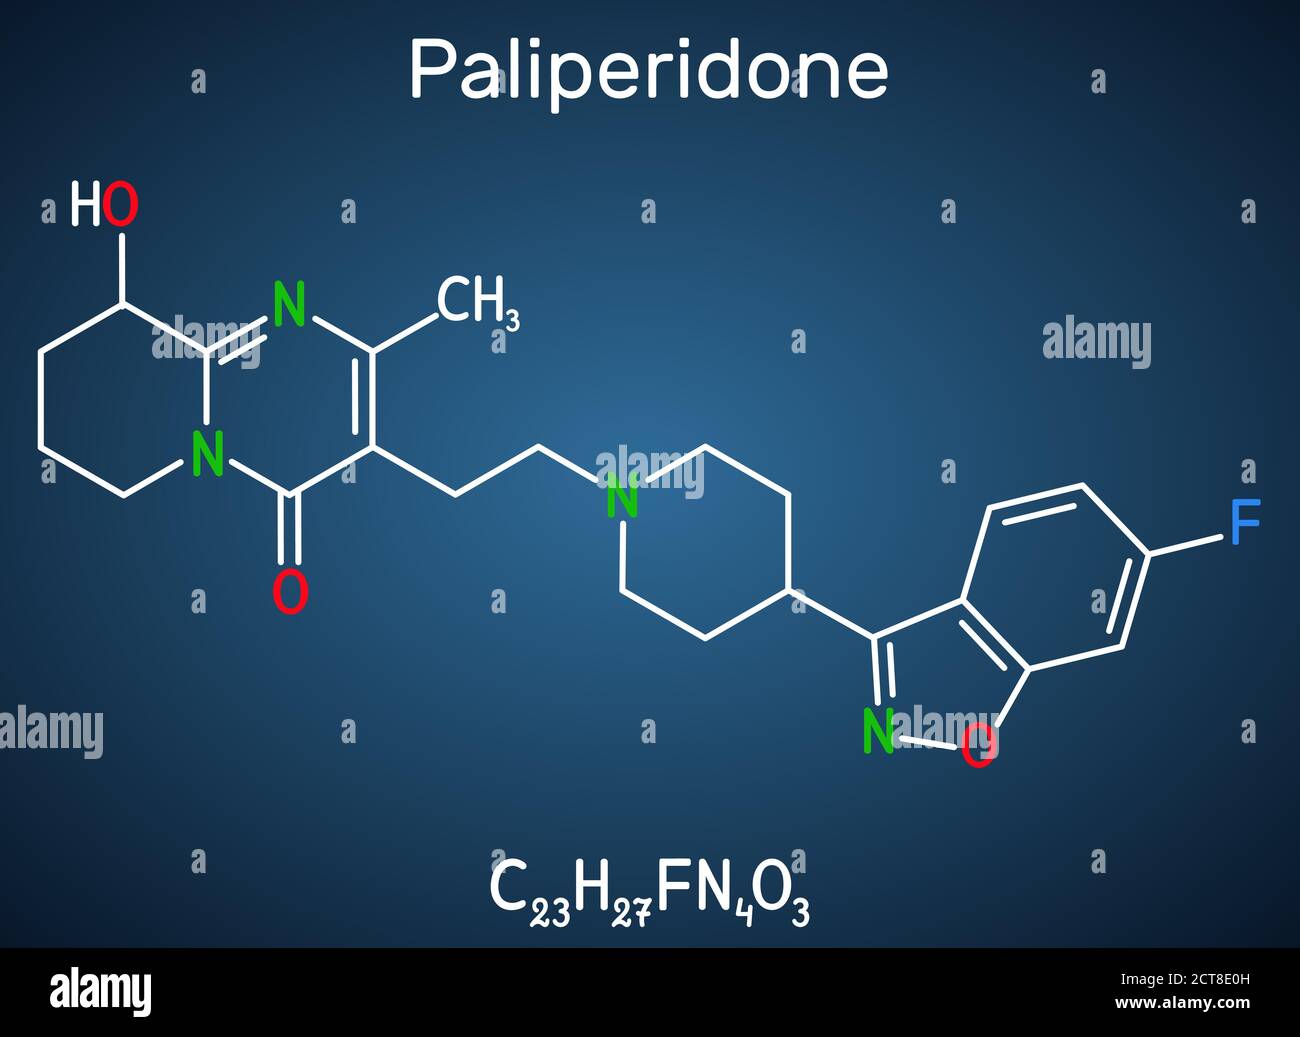 Paliperidone, molecola di 9-idrossirisperidone. E' un antipsicotico atipico che viene usato nel trattamento della schizofrenia. Sostanza chimica strutturale fo Illustrazione Vettoriale